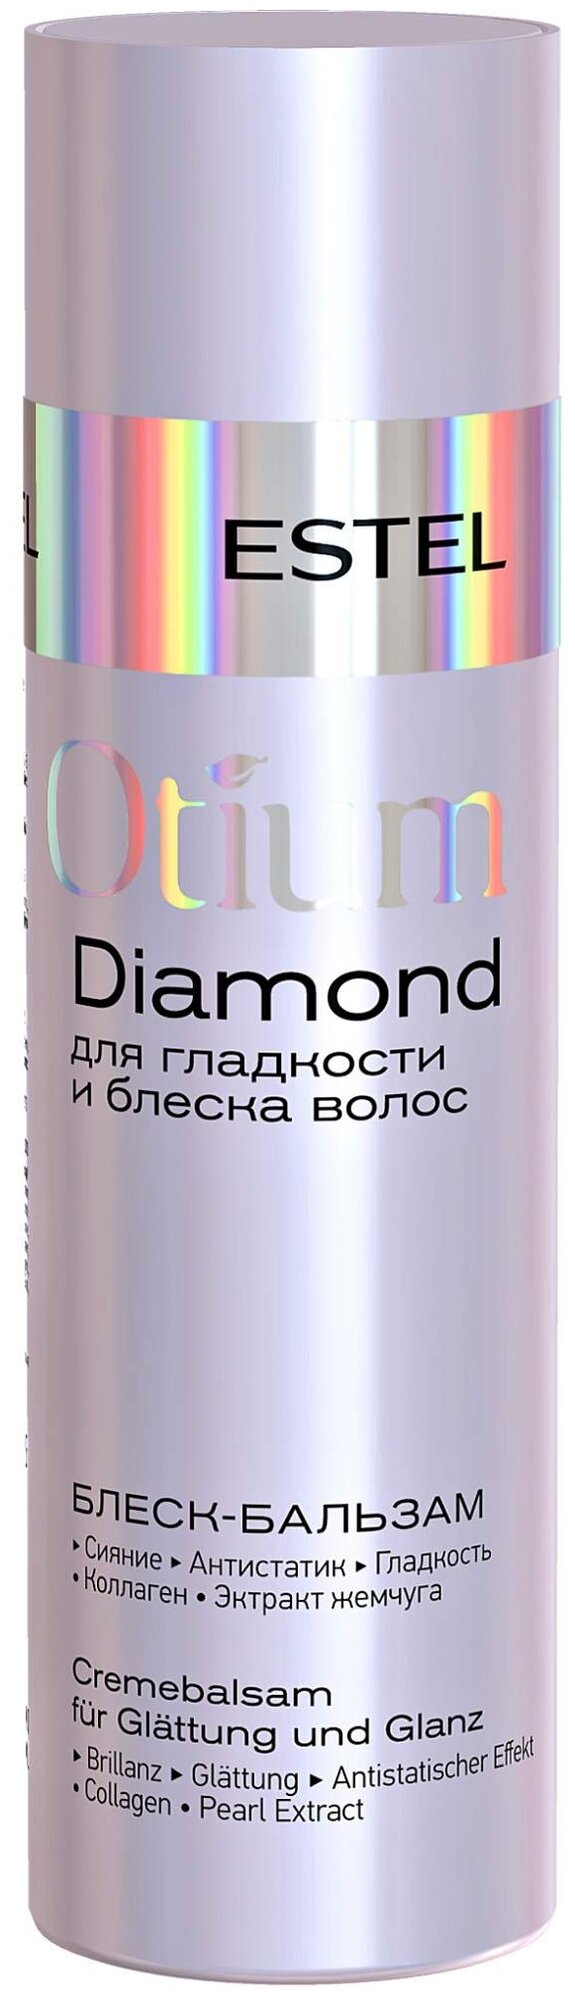 ESTEL блеск-бальзам Otium Diamond для гладкости и блеска волос, 200 мл